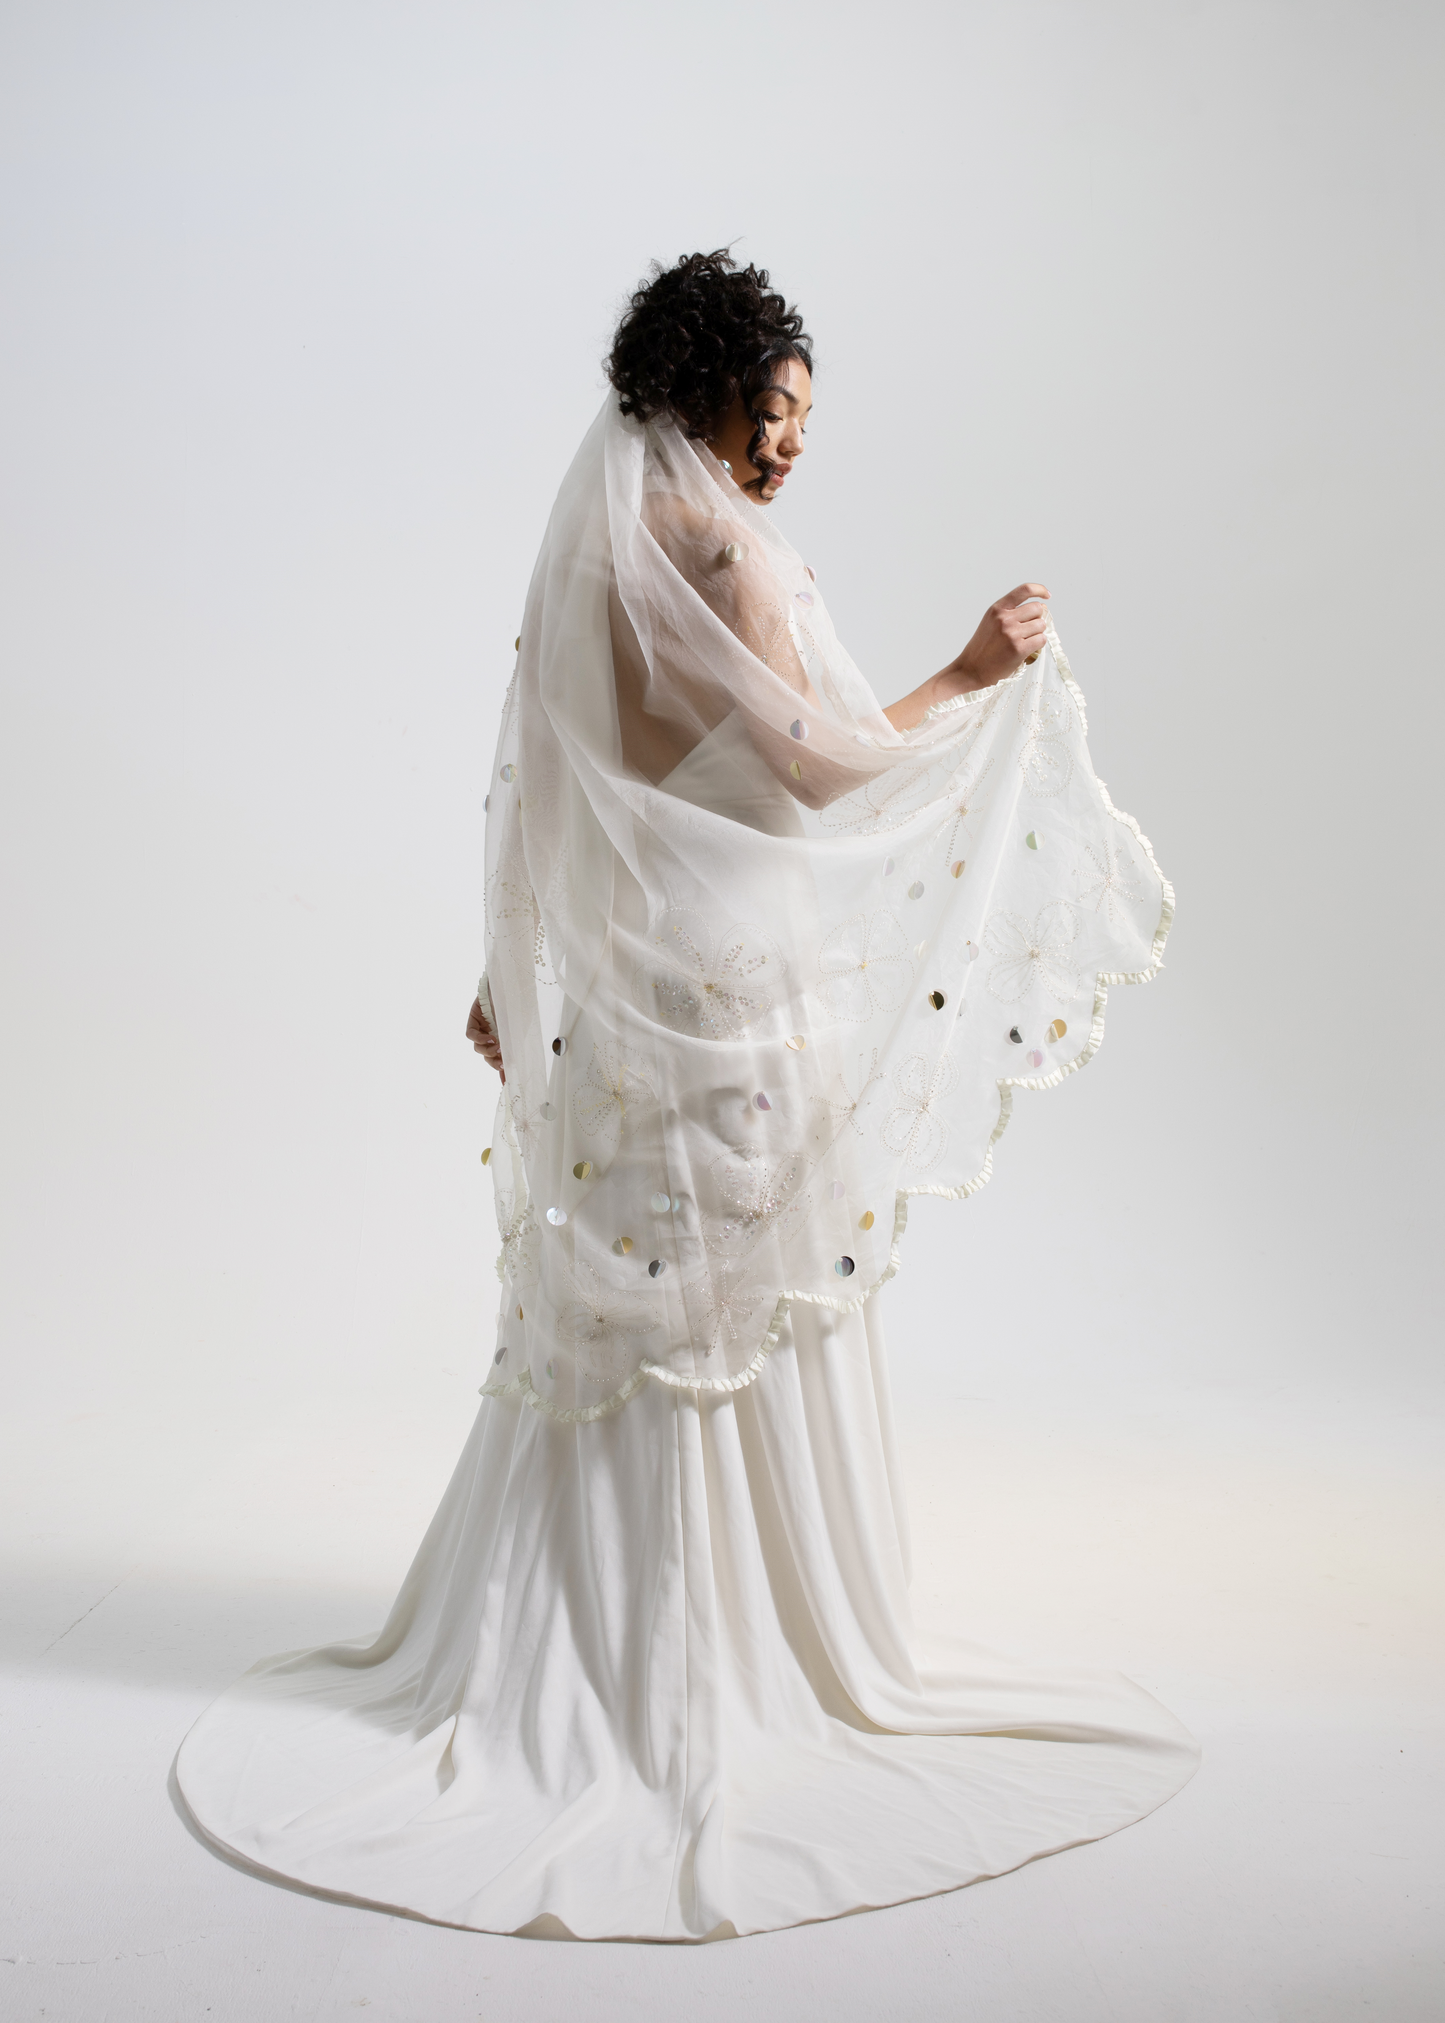 FancyVestido White Bridal Veil with Gold Headdress